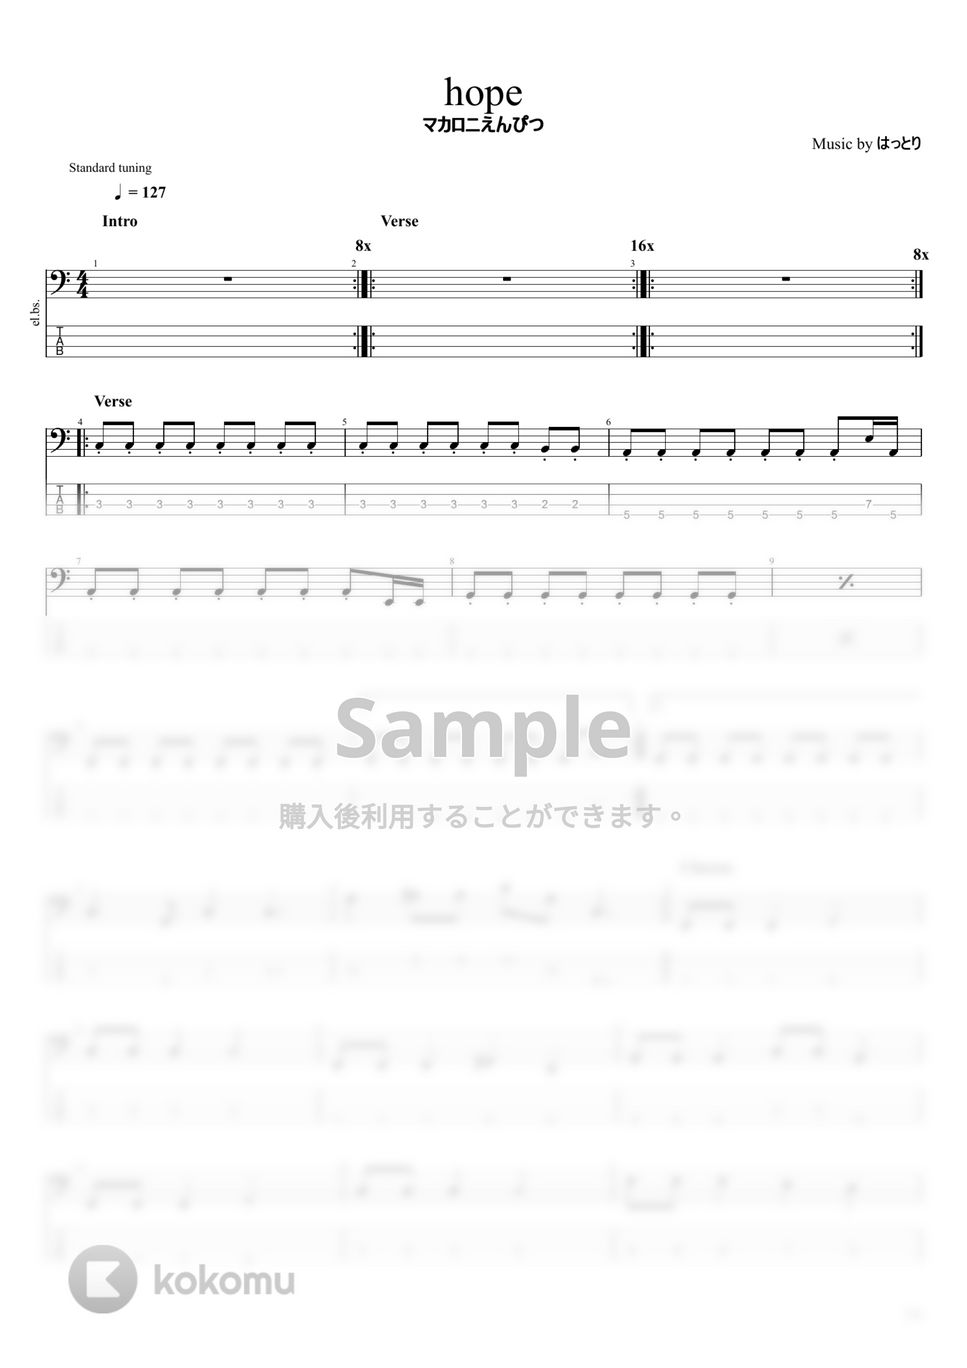 マカロニえんぴつ - マカロニえんぴつ楽譜集Vol.2 (10曲) by まっきん